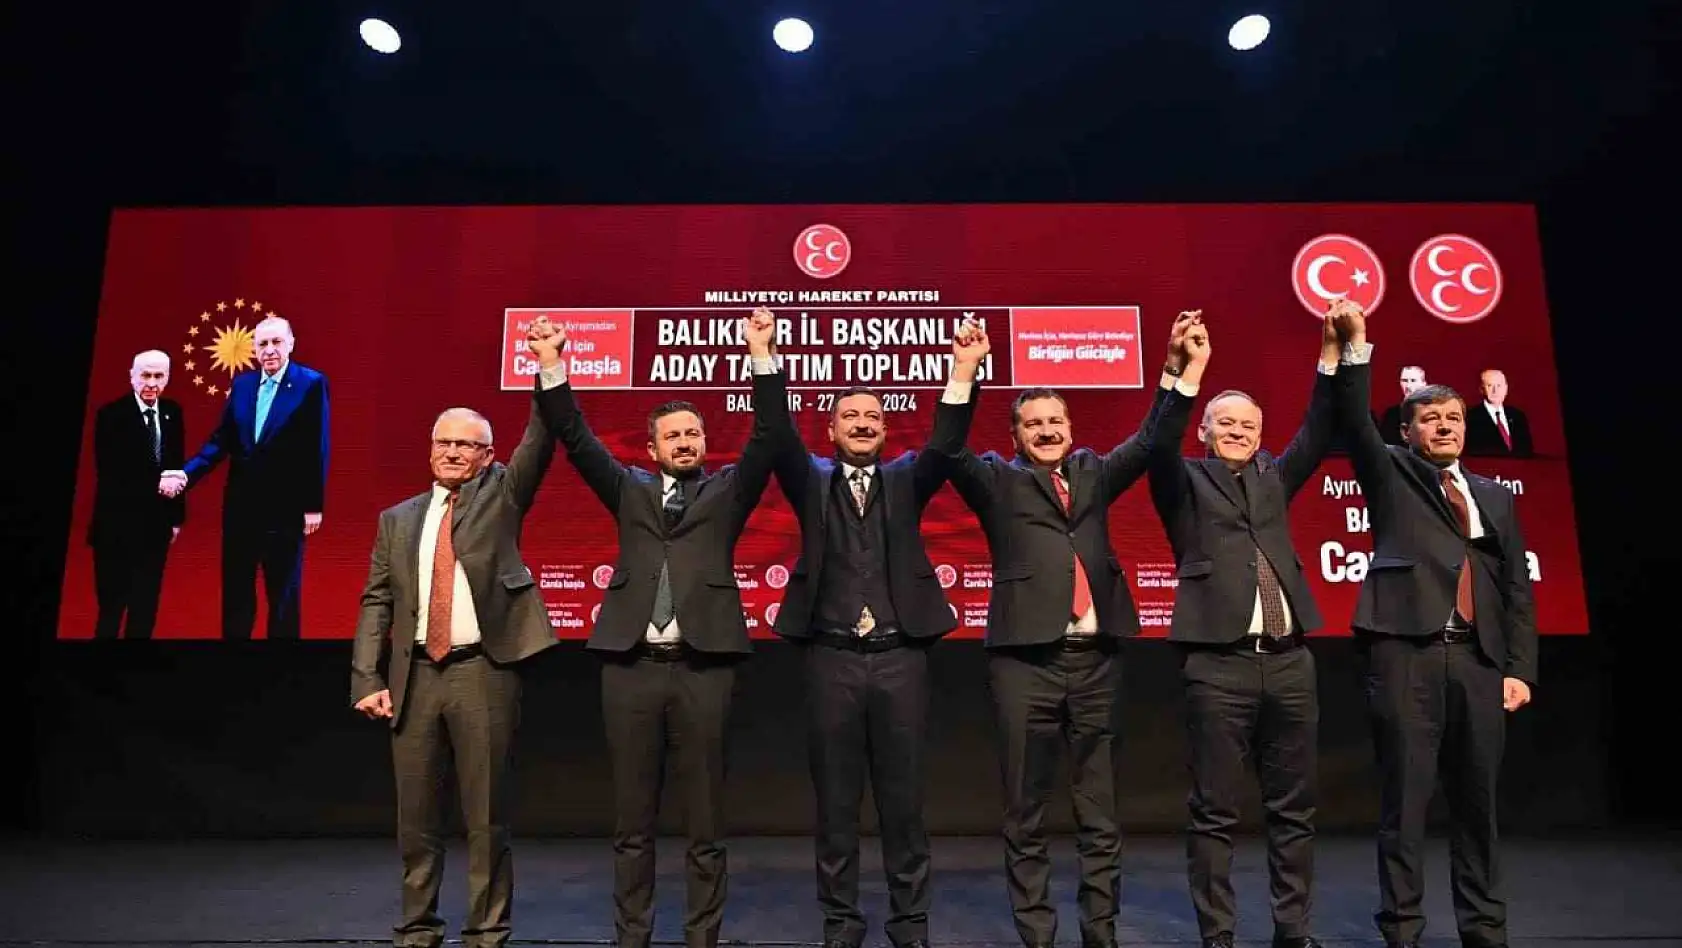 MHP Balıkesir Adaylarını Tanıttı